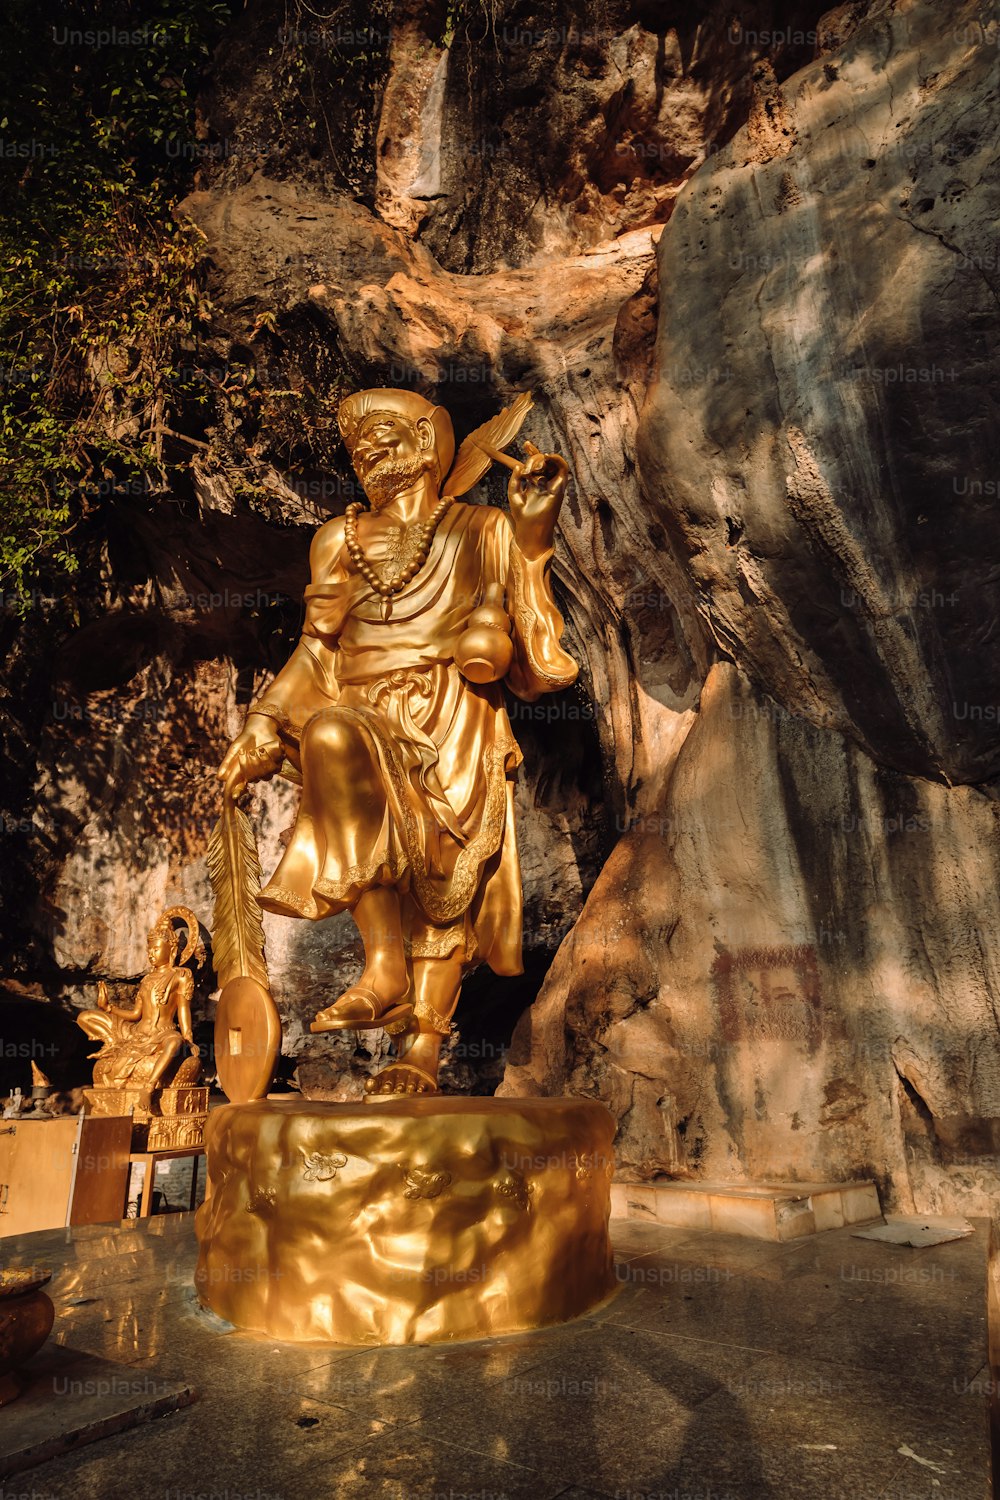 eine goldene Statue eines Mannes, der ein Schwert hält